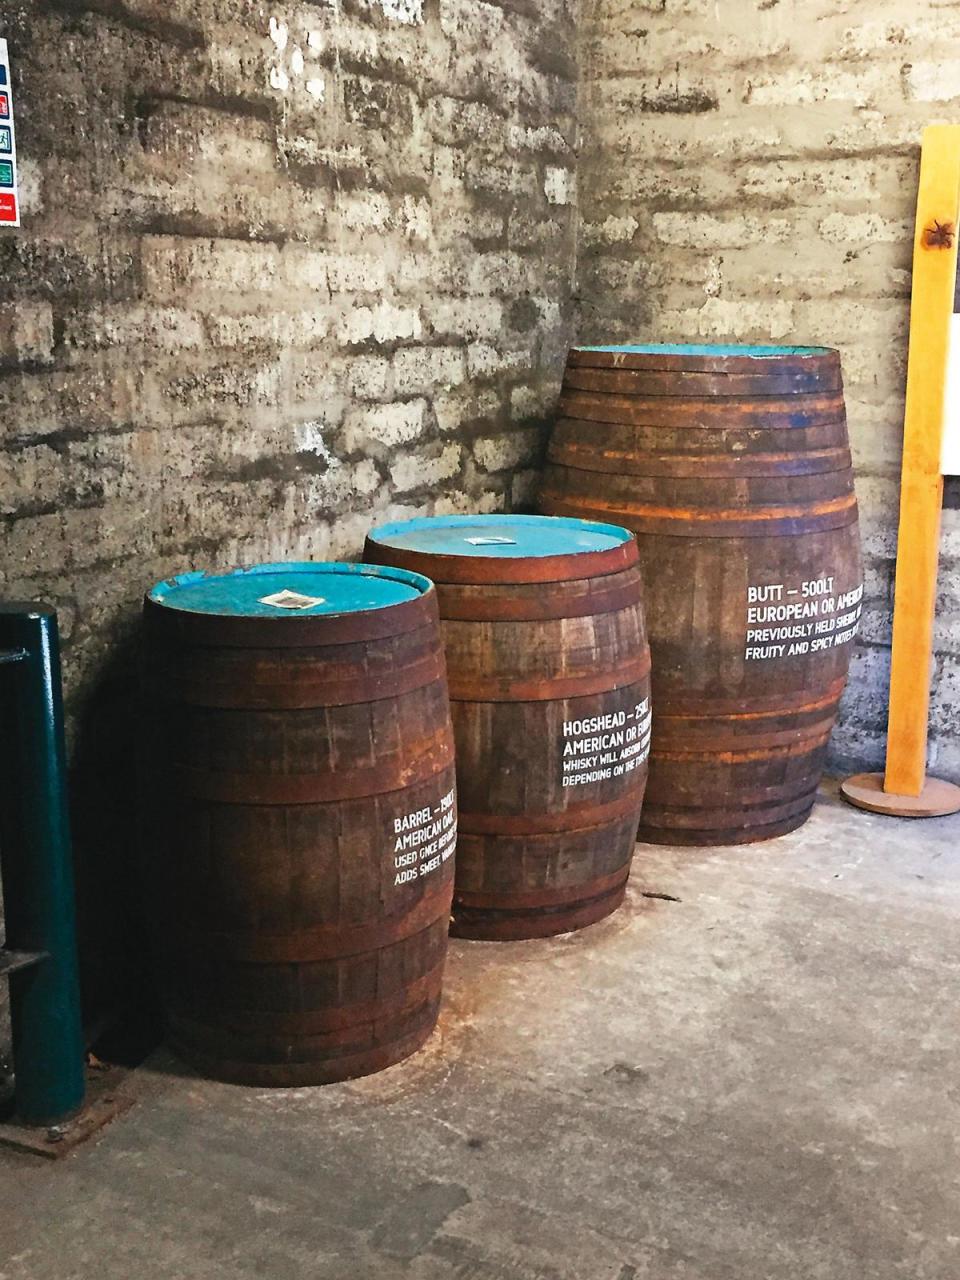 橡木桶的種類（右起雪莉桶、豬頭桶、波本桶）會影響威士忌的風味，橡木桶的大小也會有天使分享的區隔。